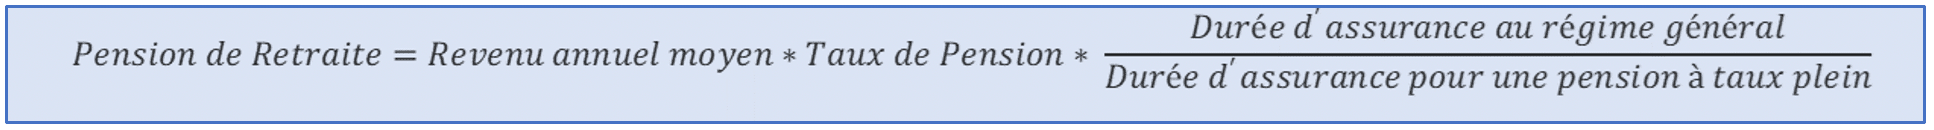 Calcul de la pension de retraite